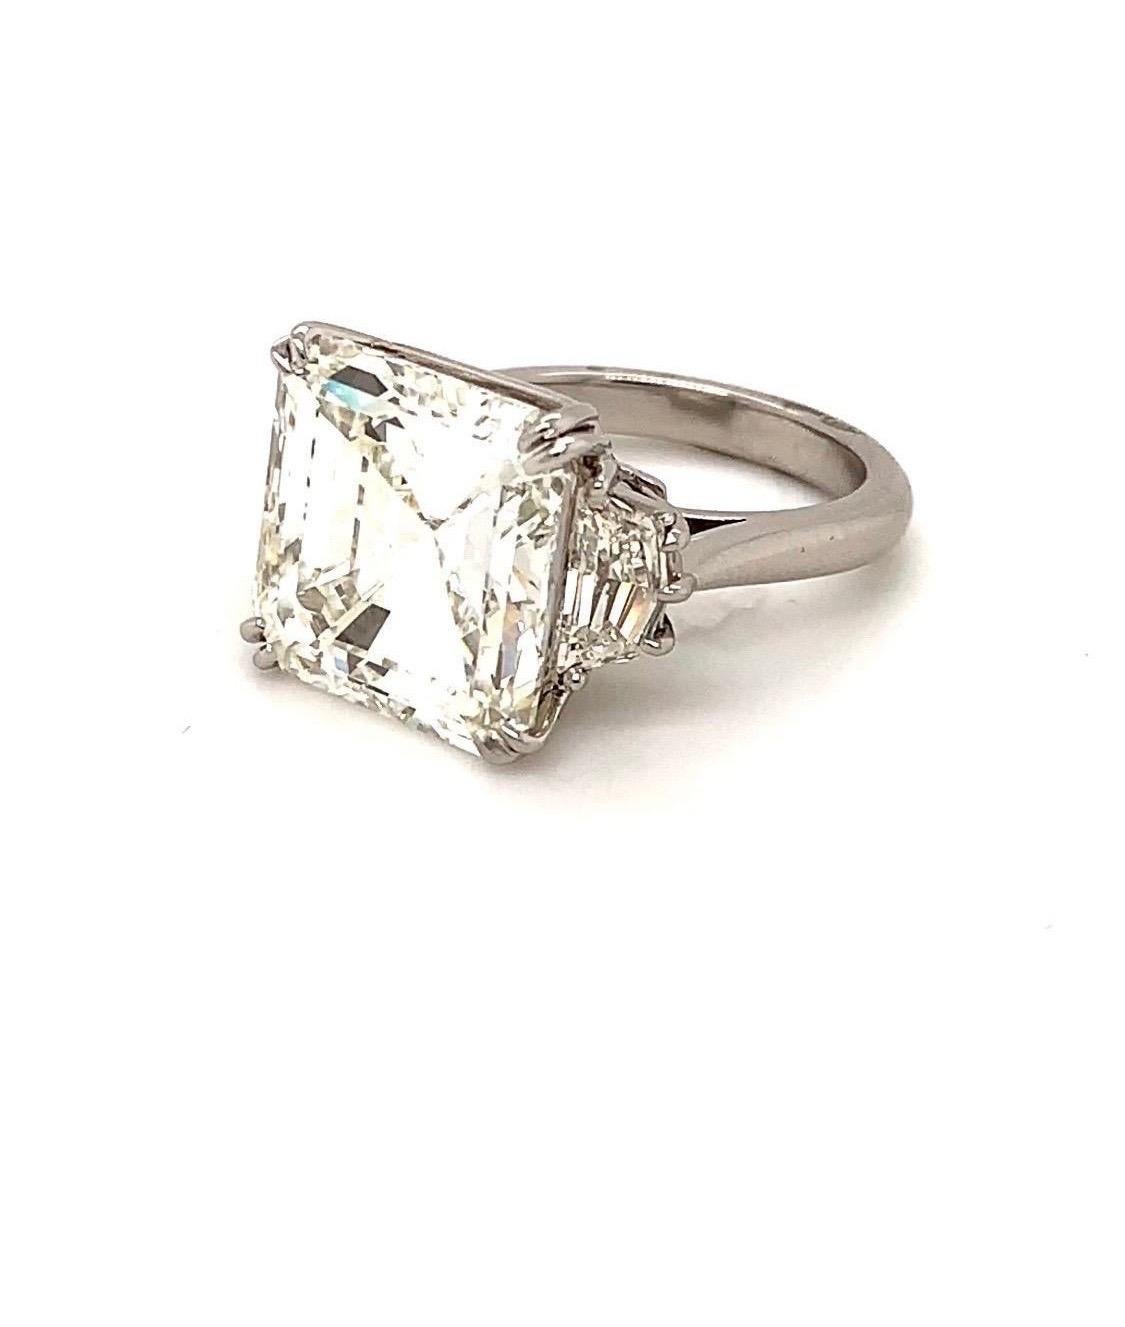 Dieser prächtige, GIA-zertifizierte 15-Karat-Diamant-Verlobungsring im Asscher-Schliff ist so voller Leben und Glanz, wie ein Edelstein nur sein kann. Dieser Ring ist in einer handgefertigten Platinfassung mit zwei seitlichen Steinen gefasst und ist